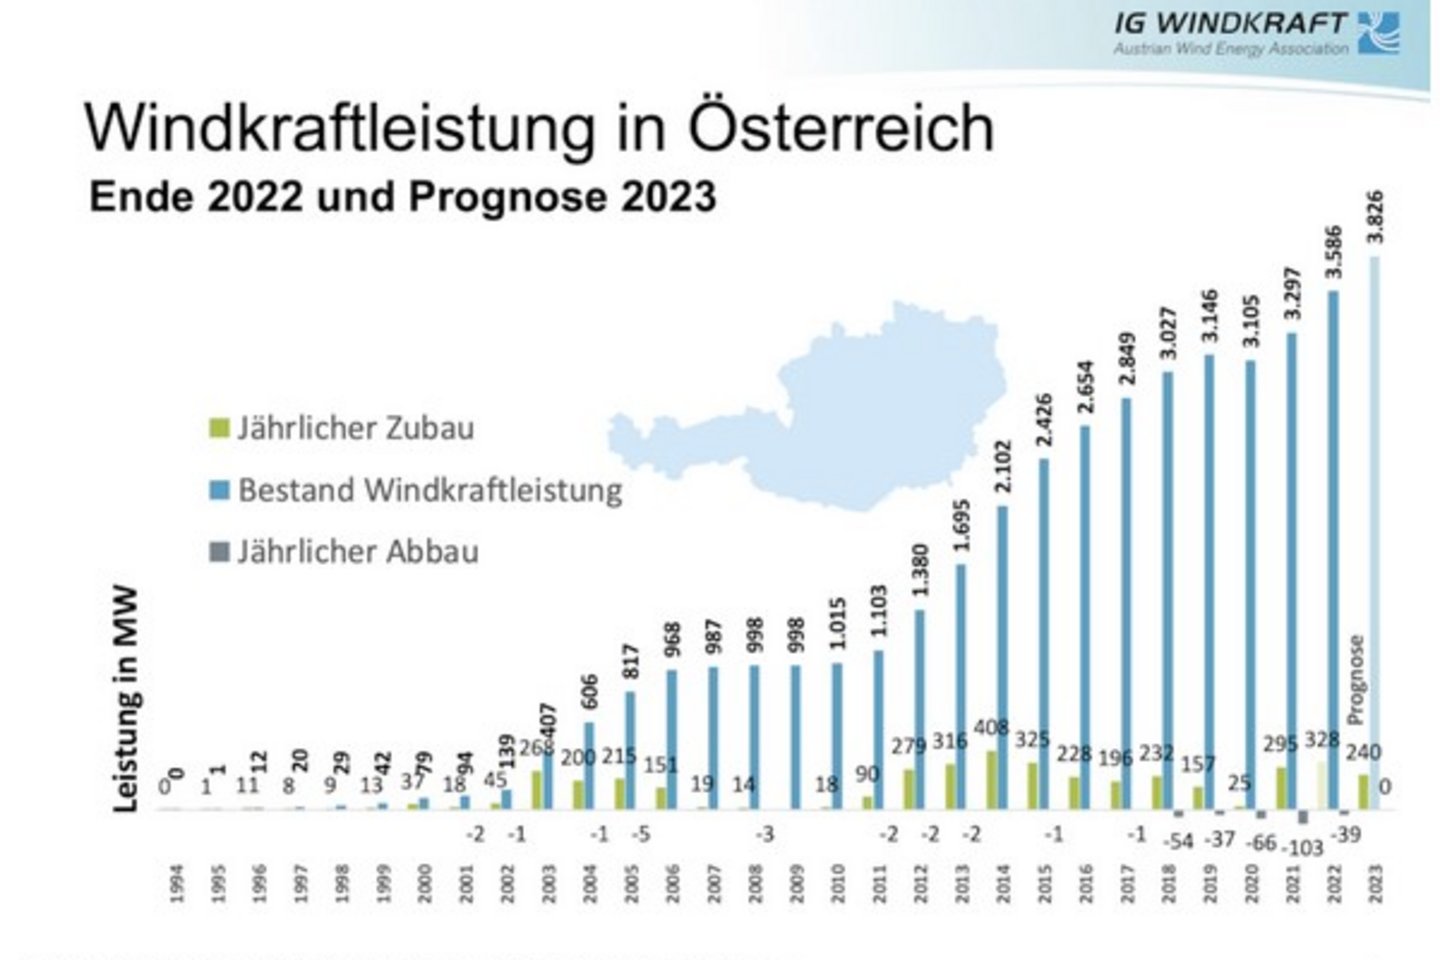 IG Windkraft, Windkraftpotenzial in Österreich 2023